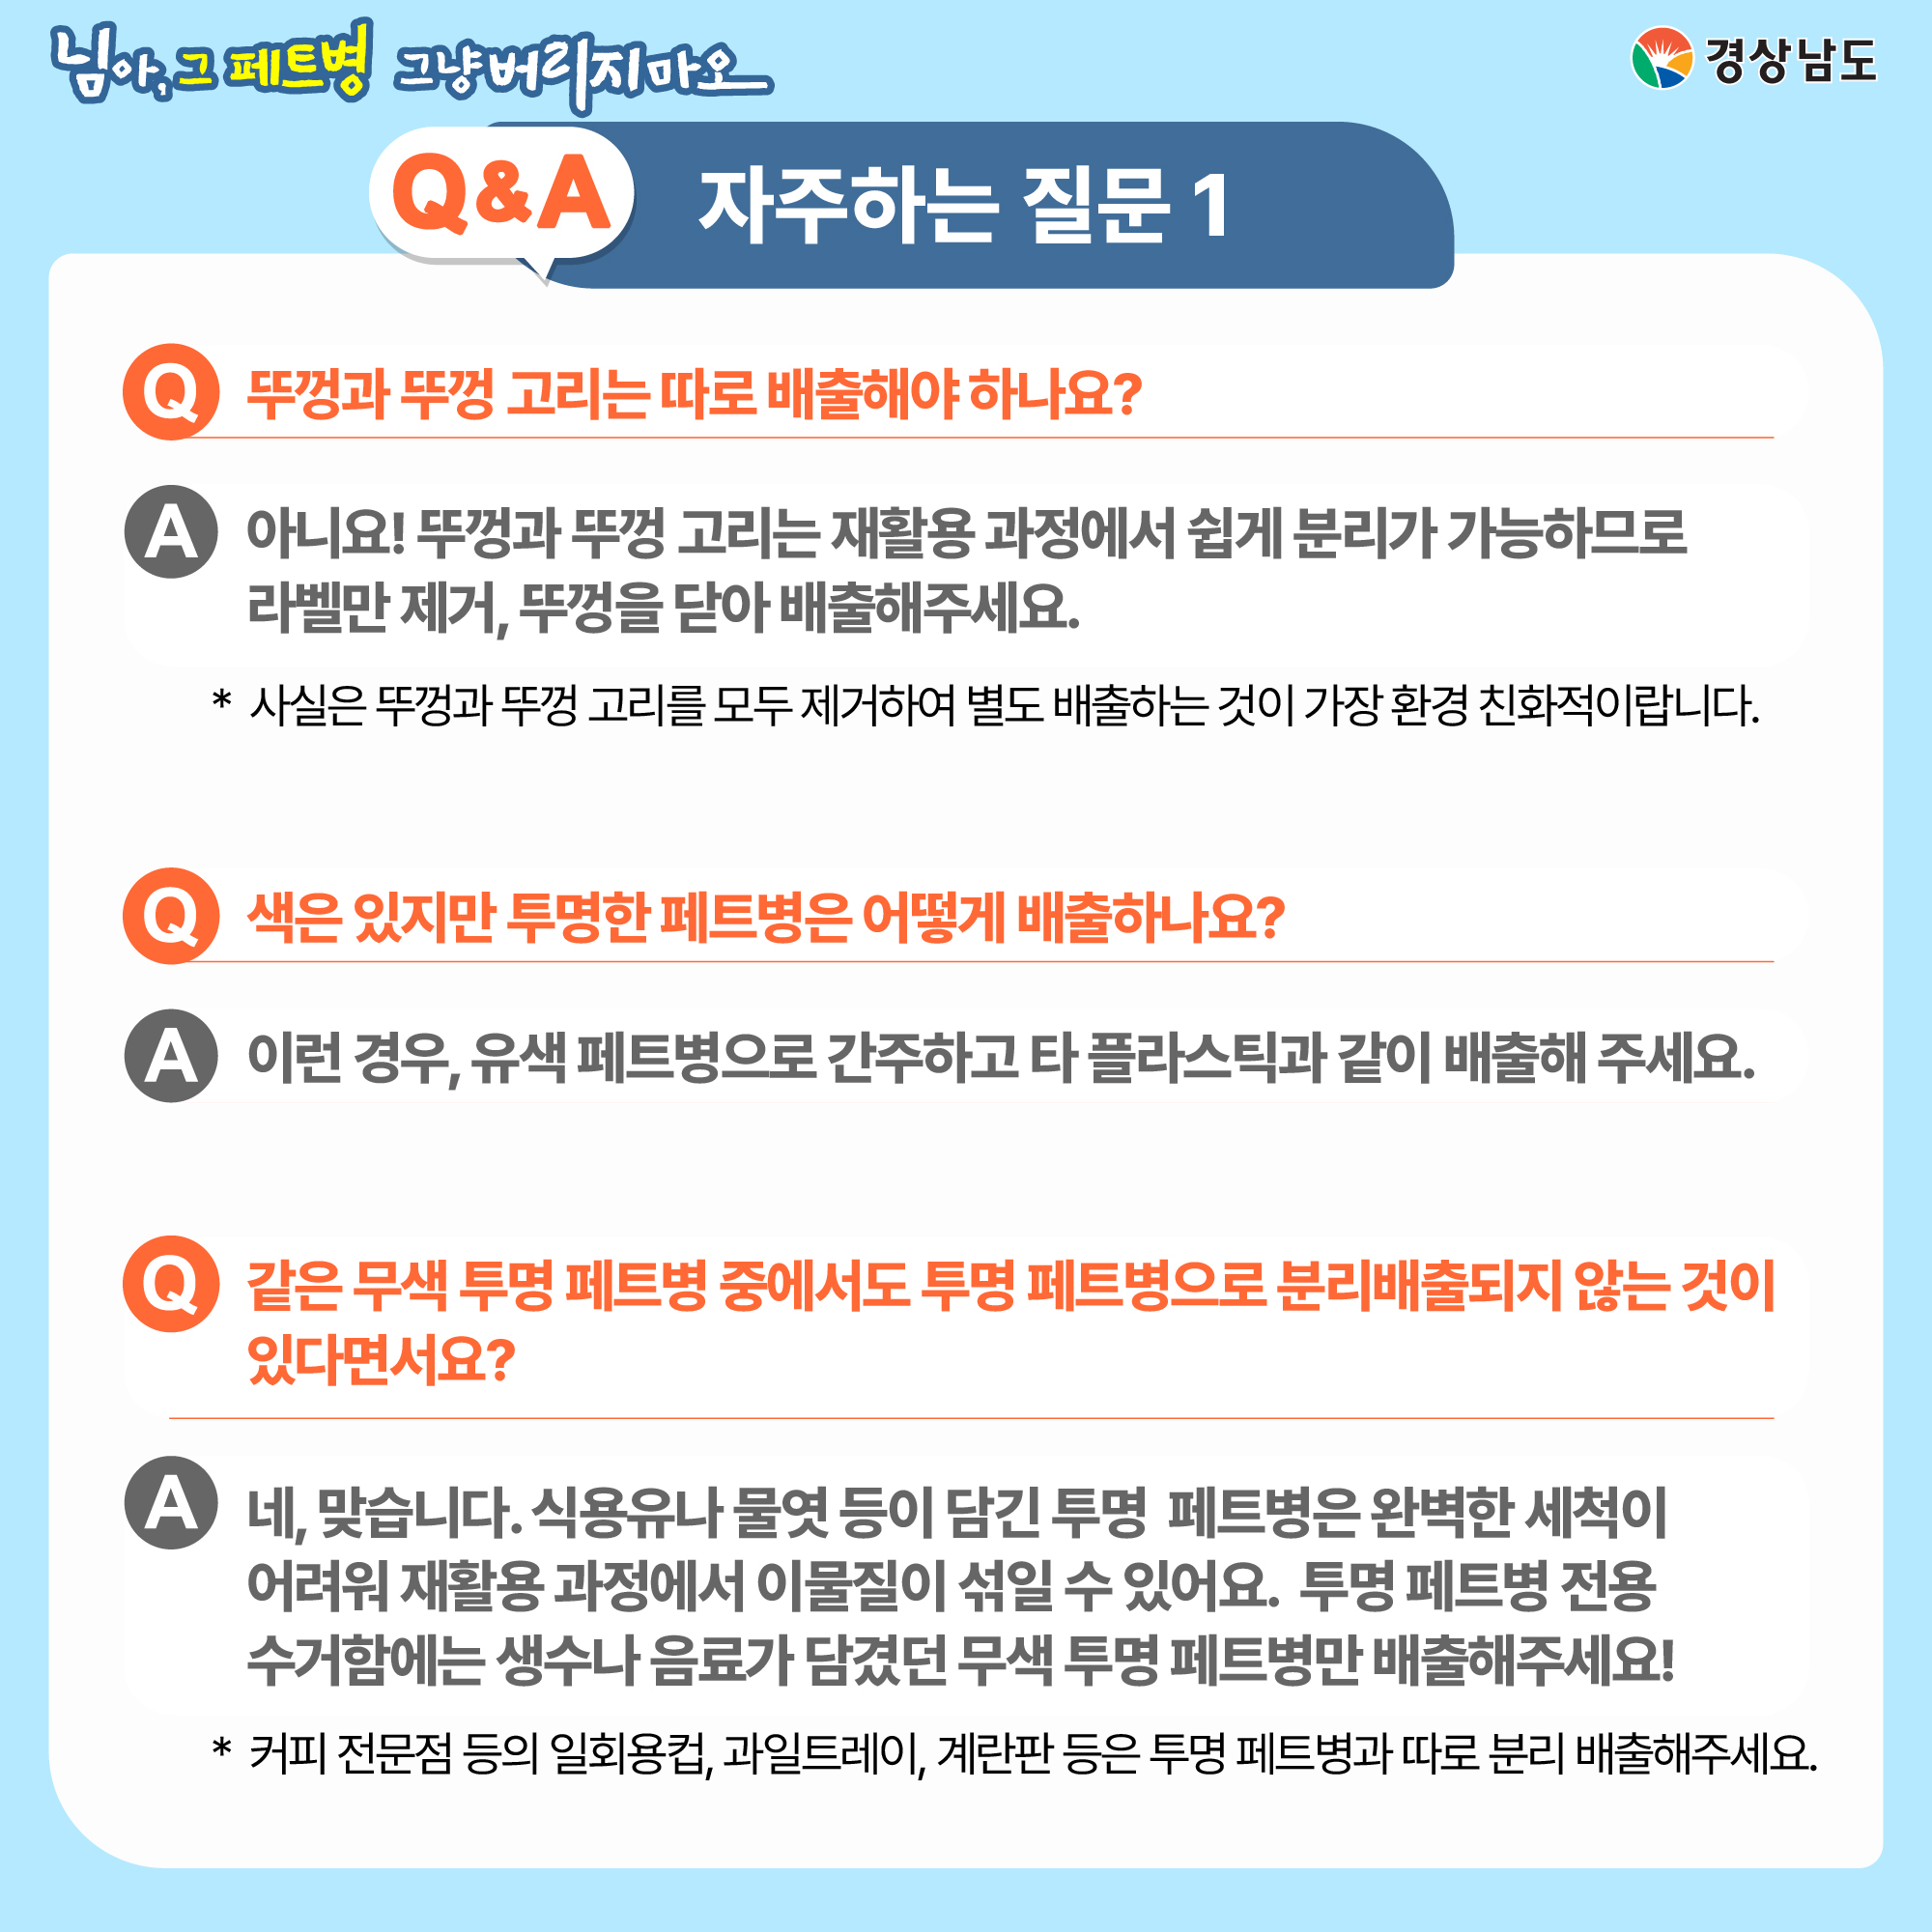 투명 페트병 분리배출제 홍보 4